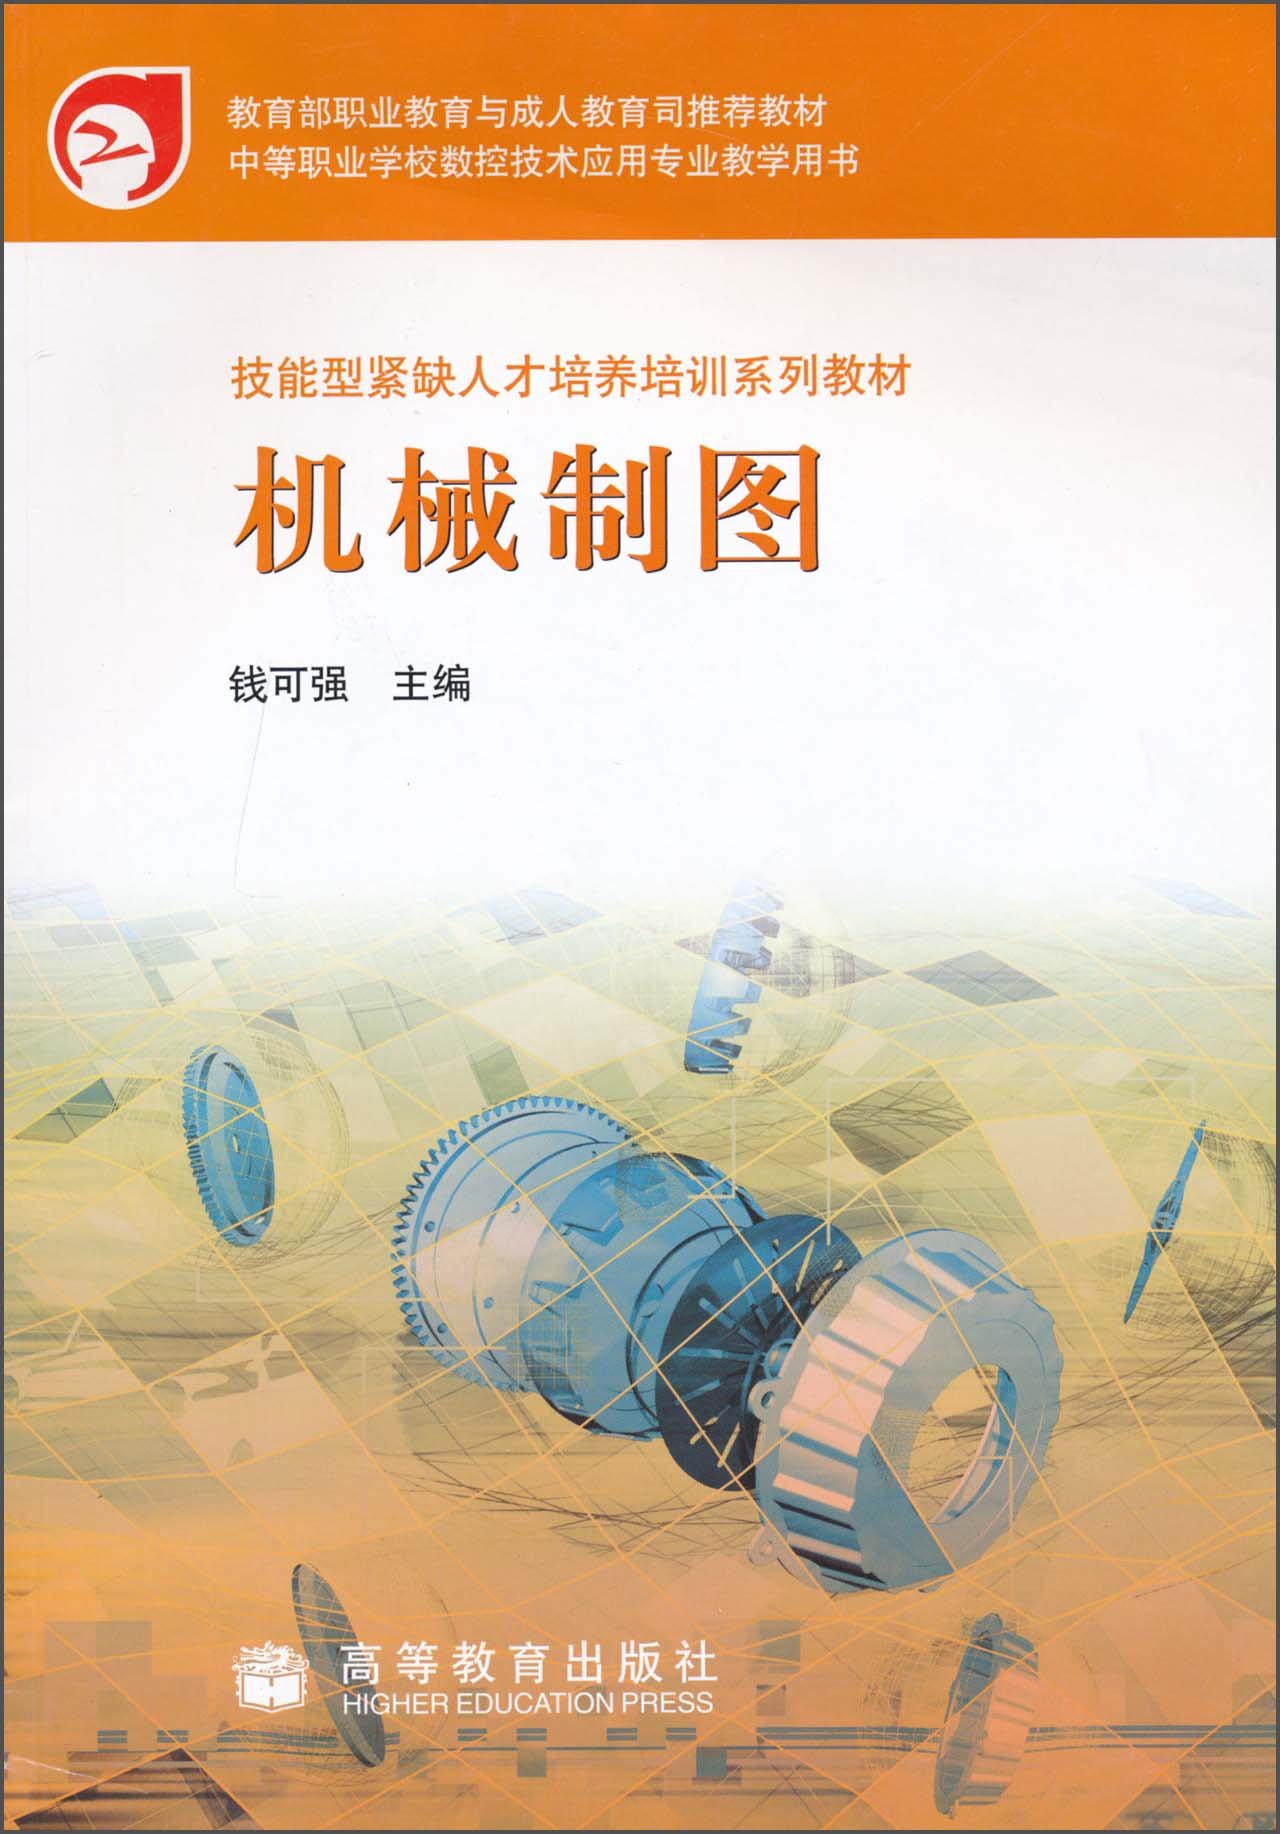 機械製圖(2005年高等教育出版社出版的圖書)